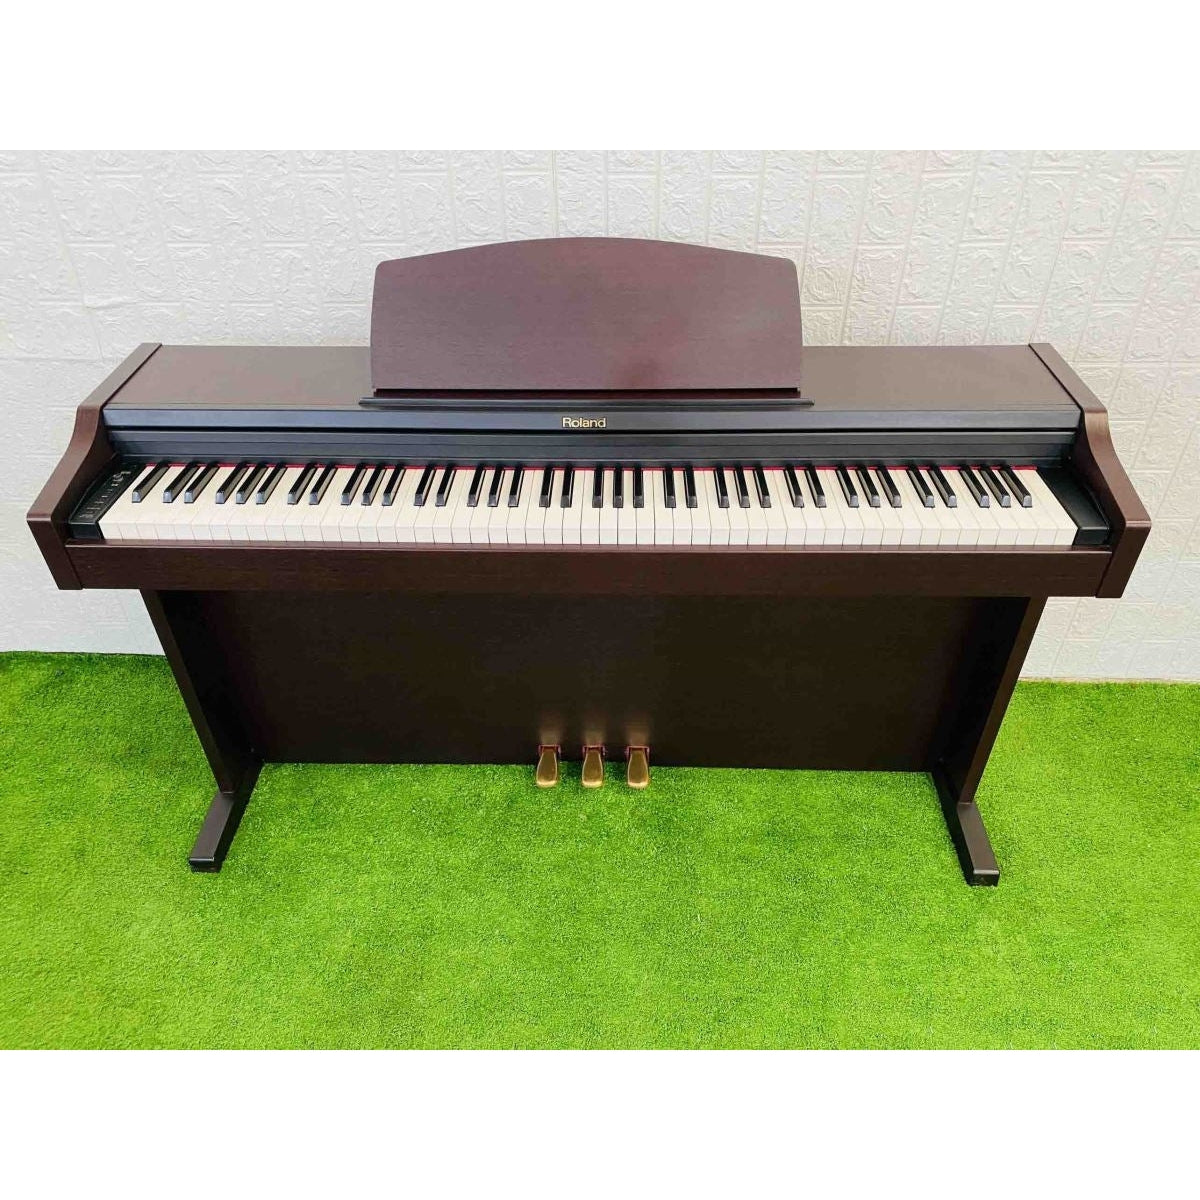 Đàn Piano Điện Roland MP-101 - Qua Sử Dụng